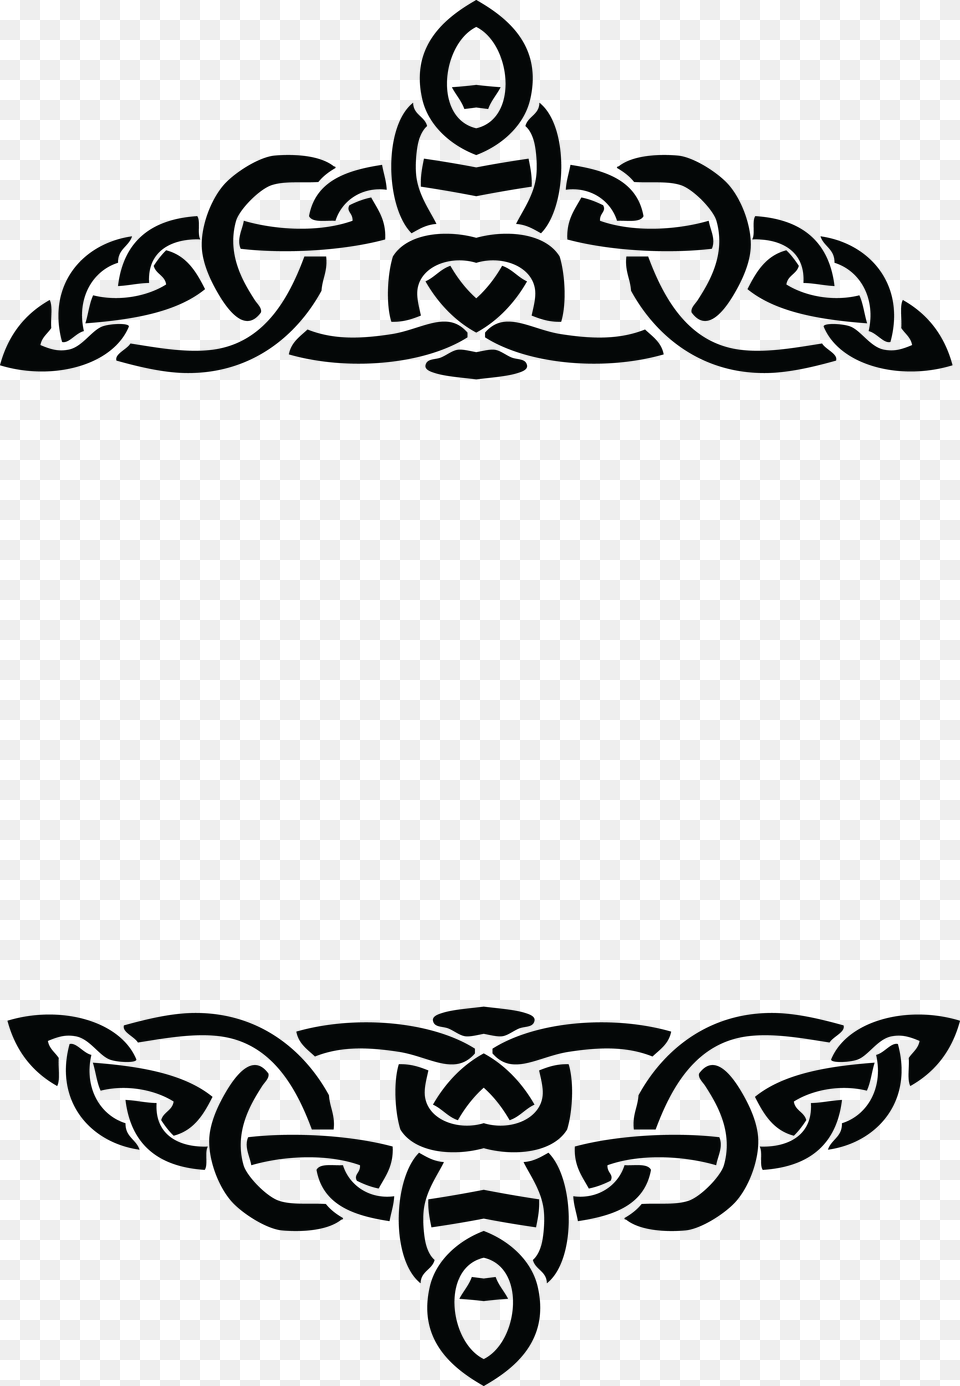 Clipart Of A Celtic Border Design Element In Black Border Design For Logo, Text, Symbol Free Png Download